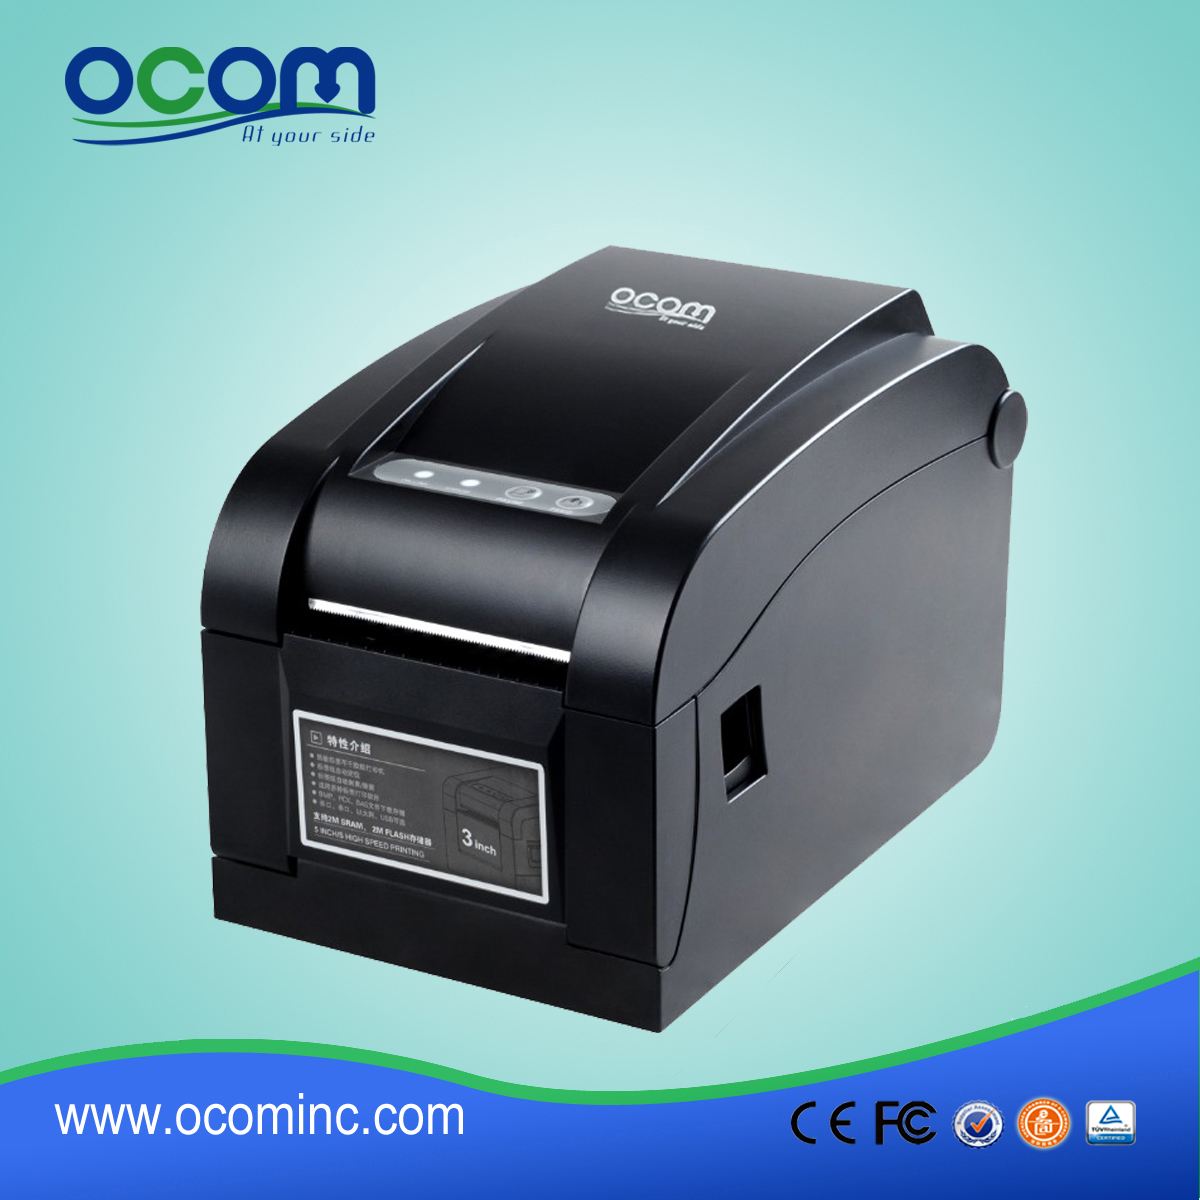 高品质的热敏条码标签打印机 -  OCBP-005